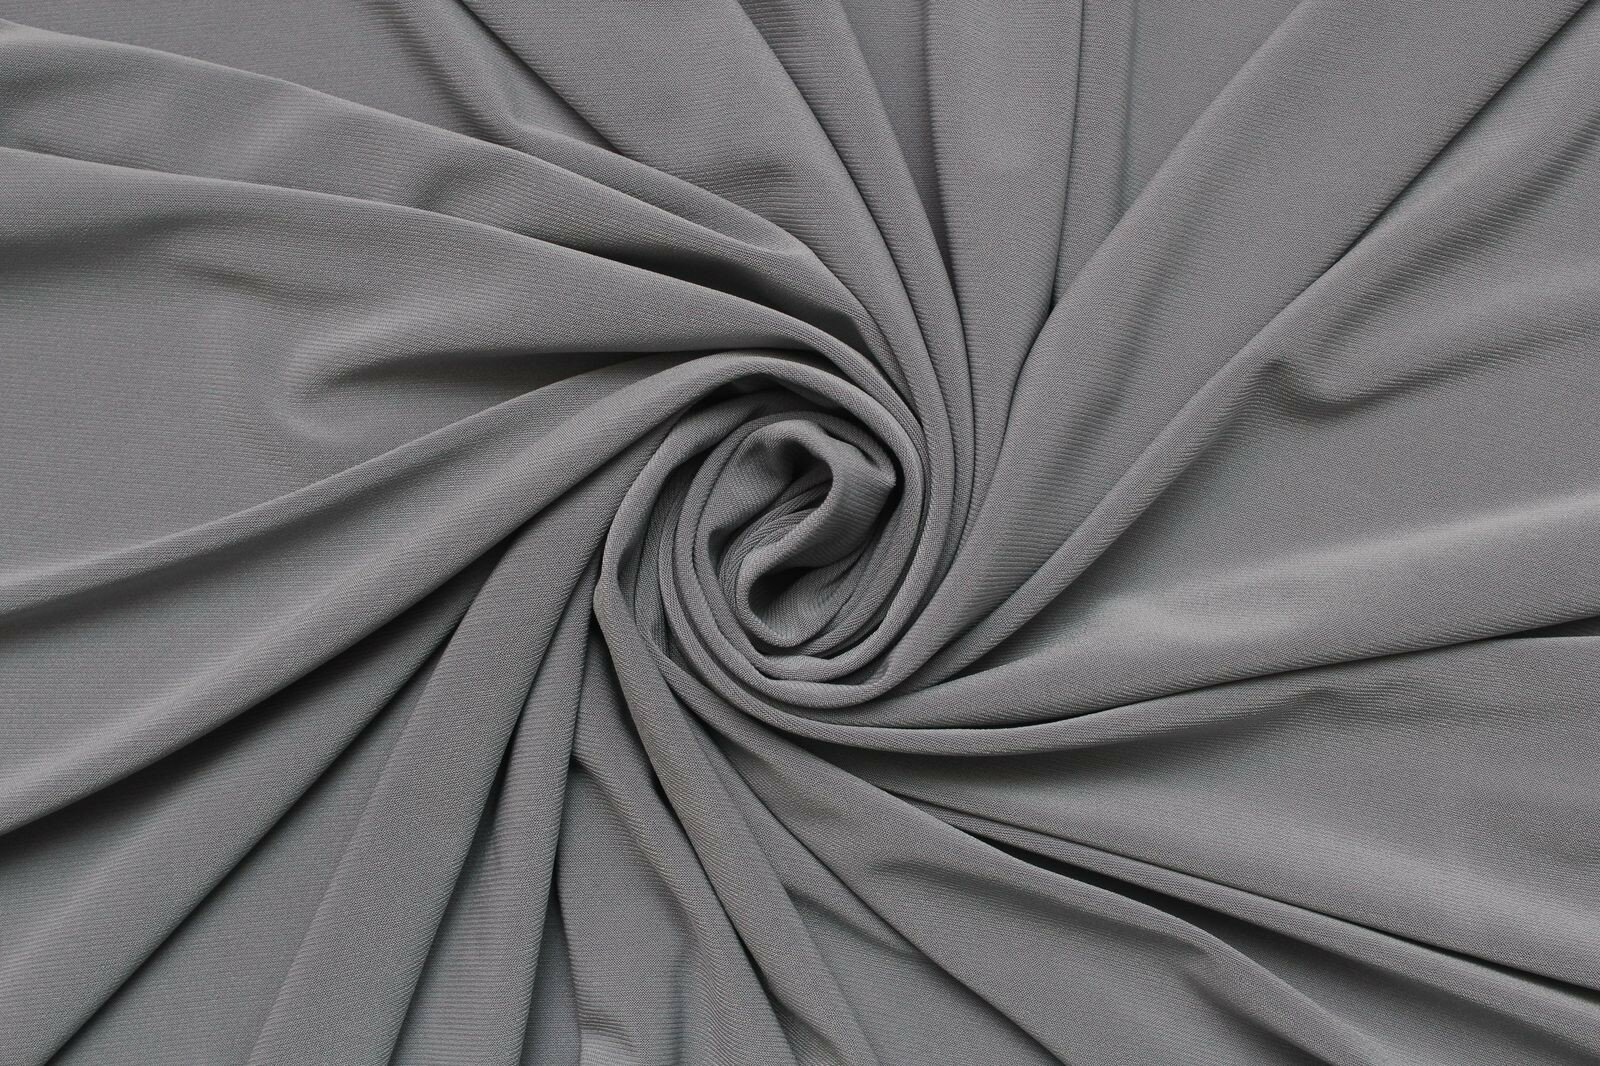 Ткань Трикотаж стрейч масло серого, стального цвета, ш144см, 0,5 м